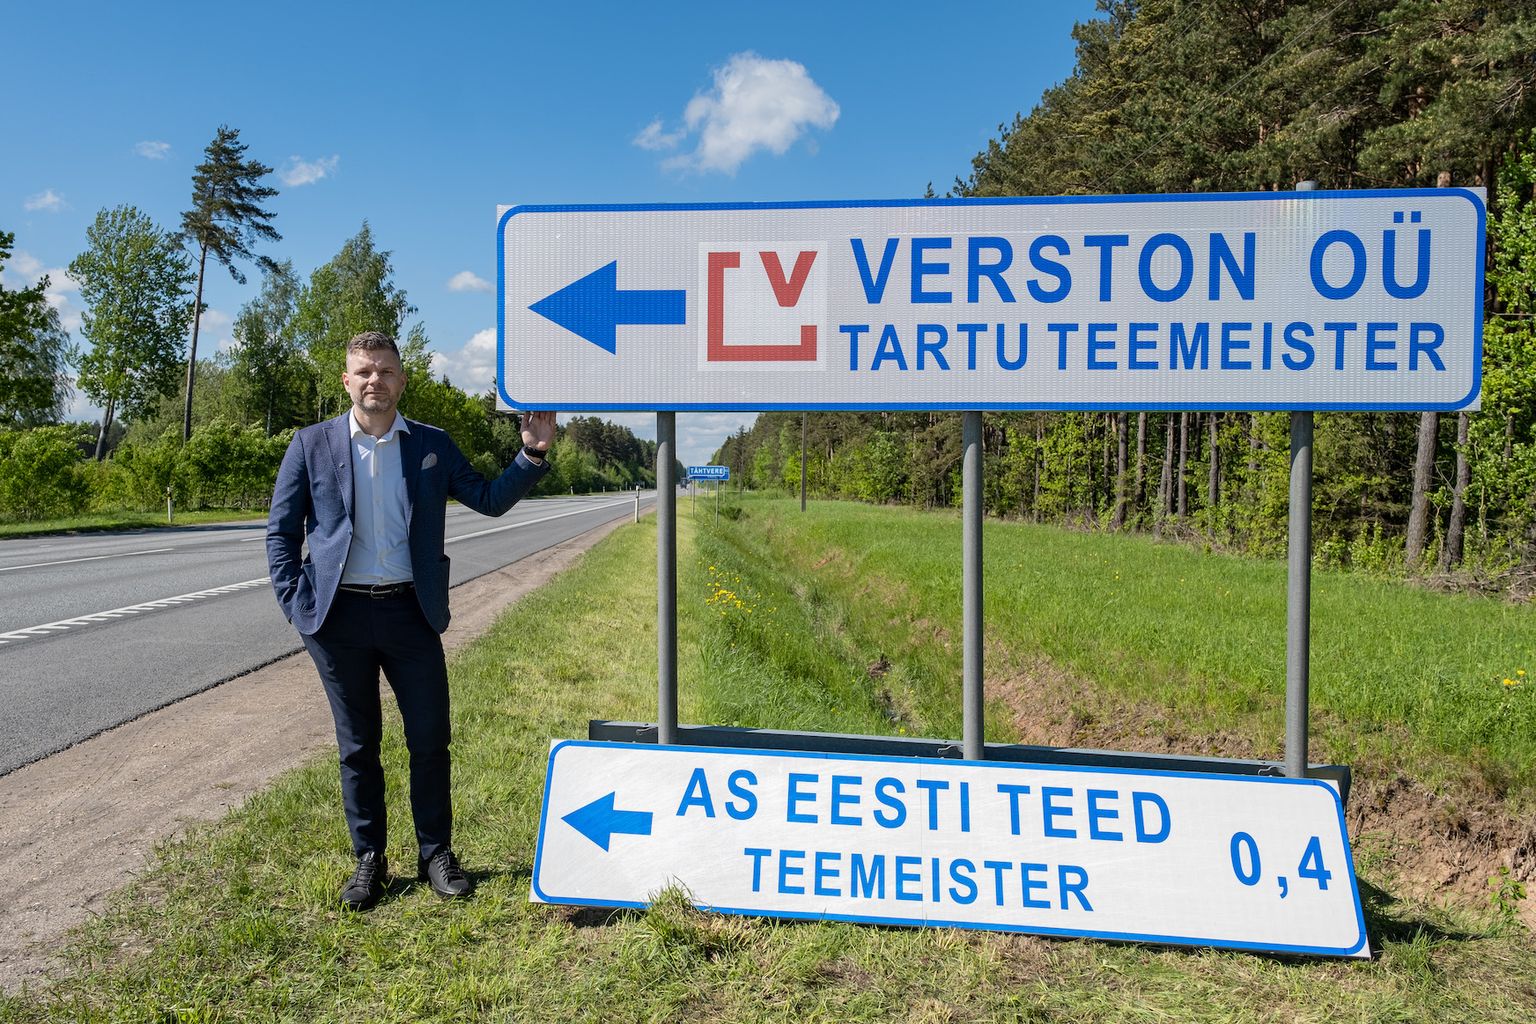 Ühise nime alla koondumine tähendas ka teeviitade väljavahetamist. Pildil: Verston OÜ juhatuse esimees Veiko Veskimäe.